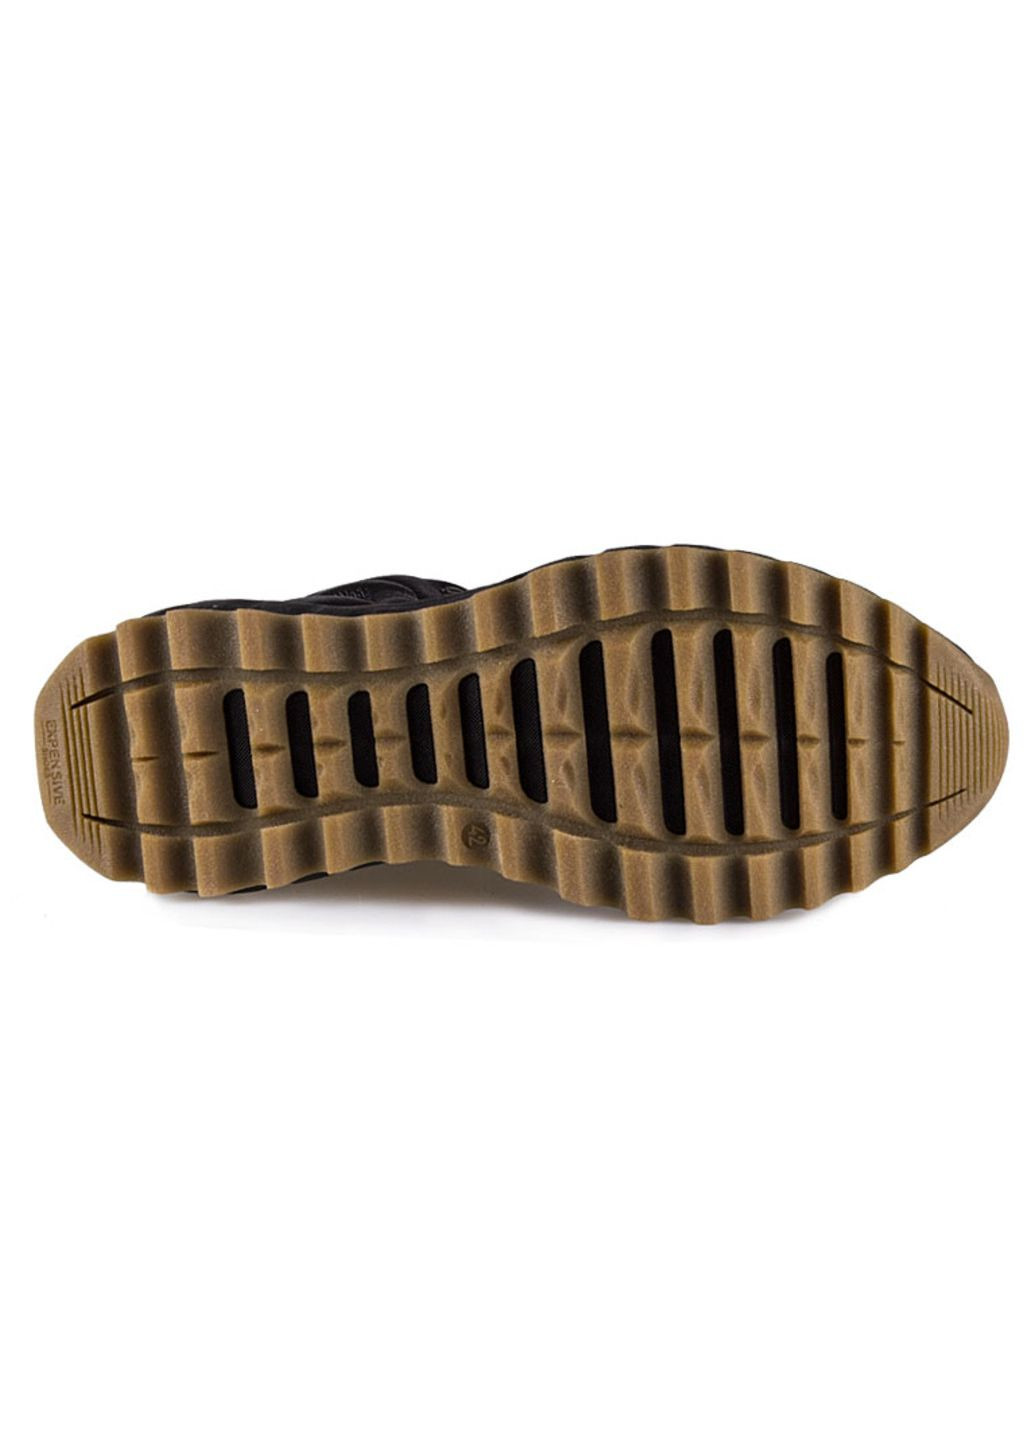 Коричневые осенние ботинки мужские бренда 9100334_(5м) Grunwald